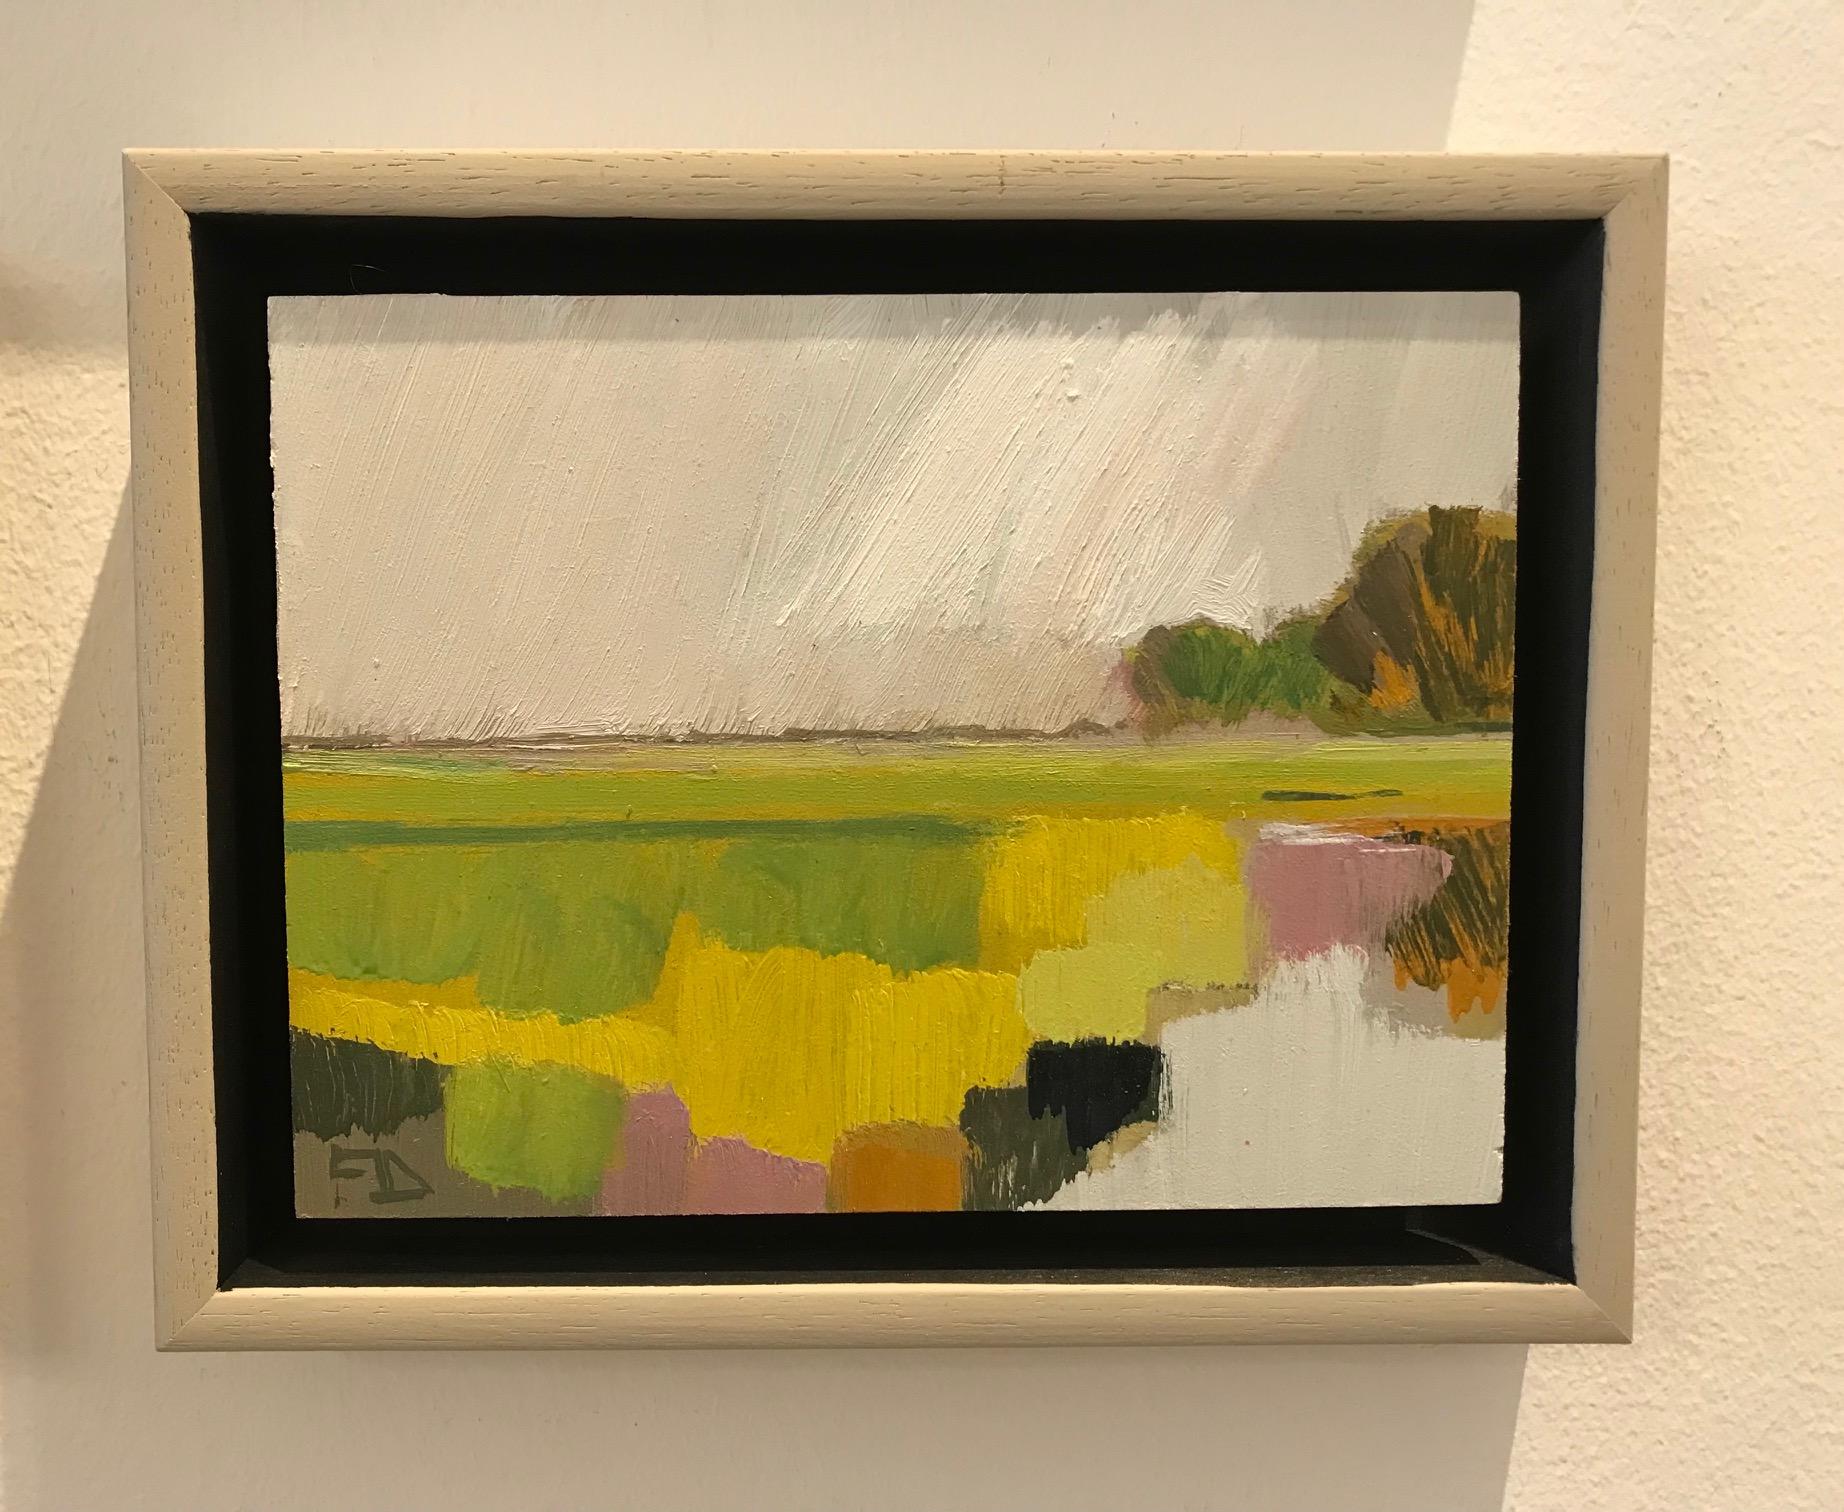 ''Landscape Miniature 0221''Contemporary Dutch Landscape Miniature Oil Painting  - Brown Landscape Painting by Frank Dekkers